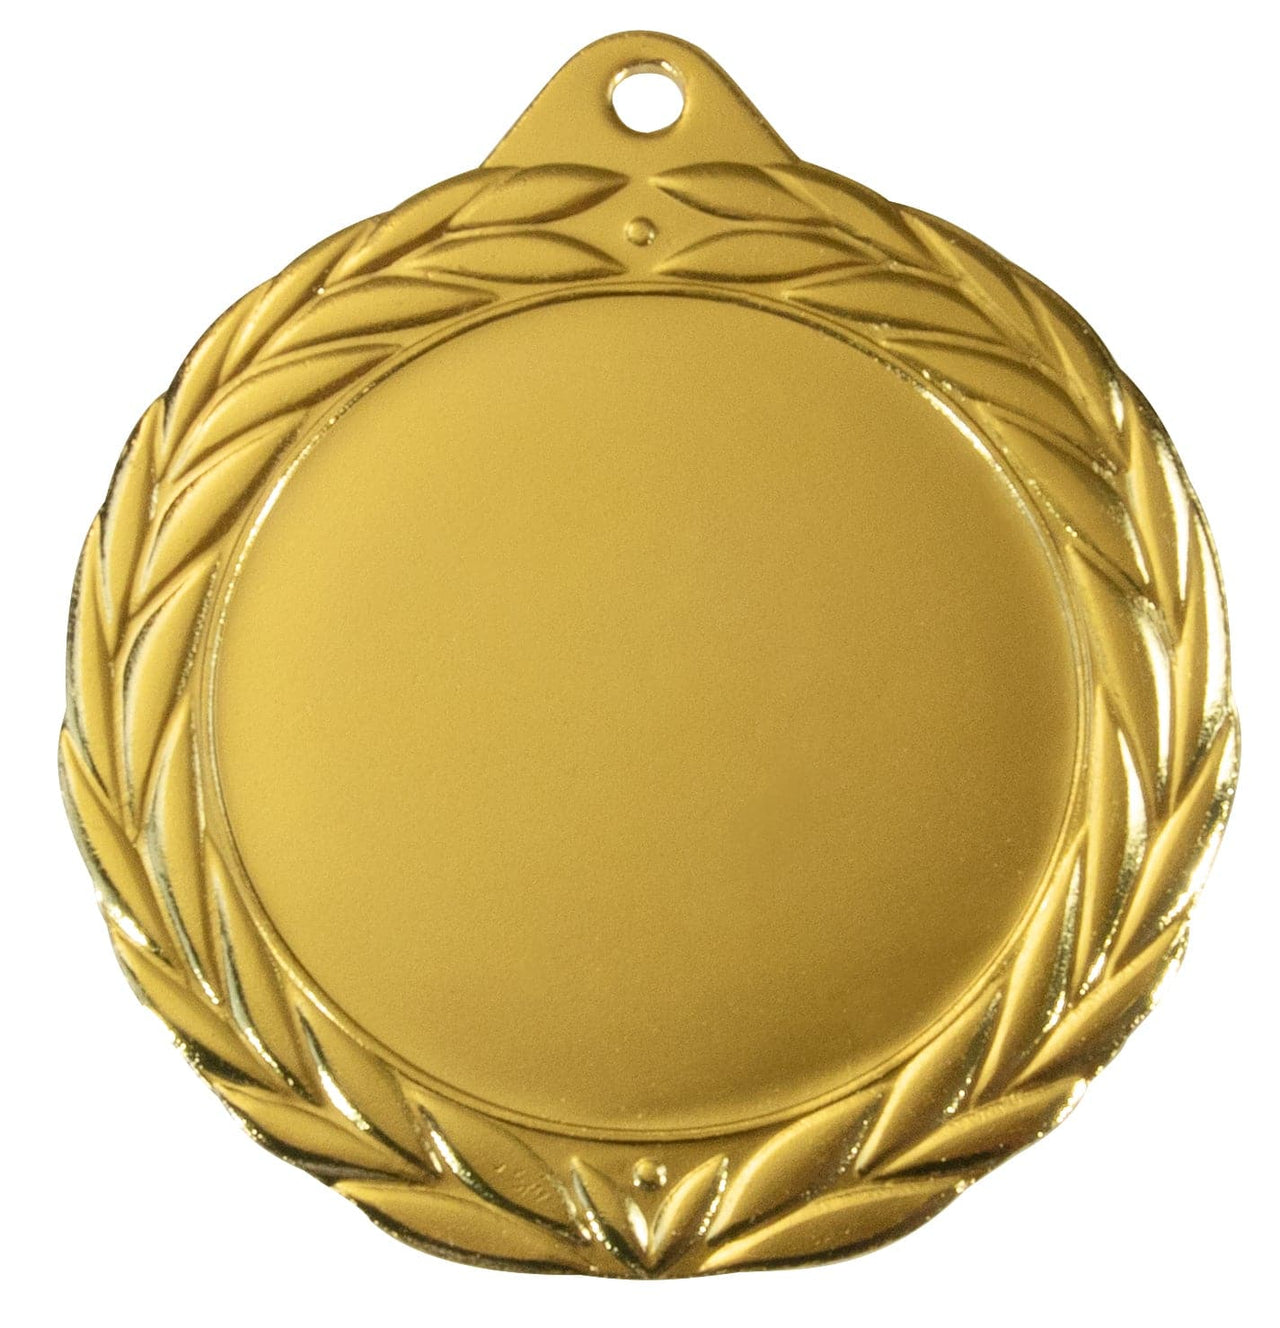 Goldmedaille mit Lorbeerkranz-Design und einer leeren Mitte zur individuellen Gestaltung, isoliert auf weißem Hintergrund. Diese Medaillen Ingolstadt 70 mm PK79345g-E50 ist ideal zur individuellen Gestaltung.